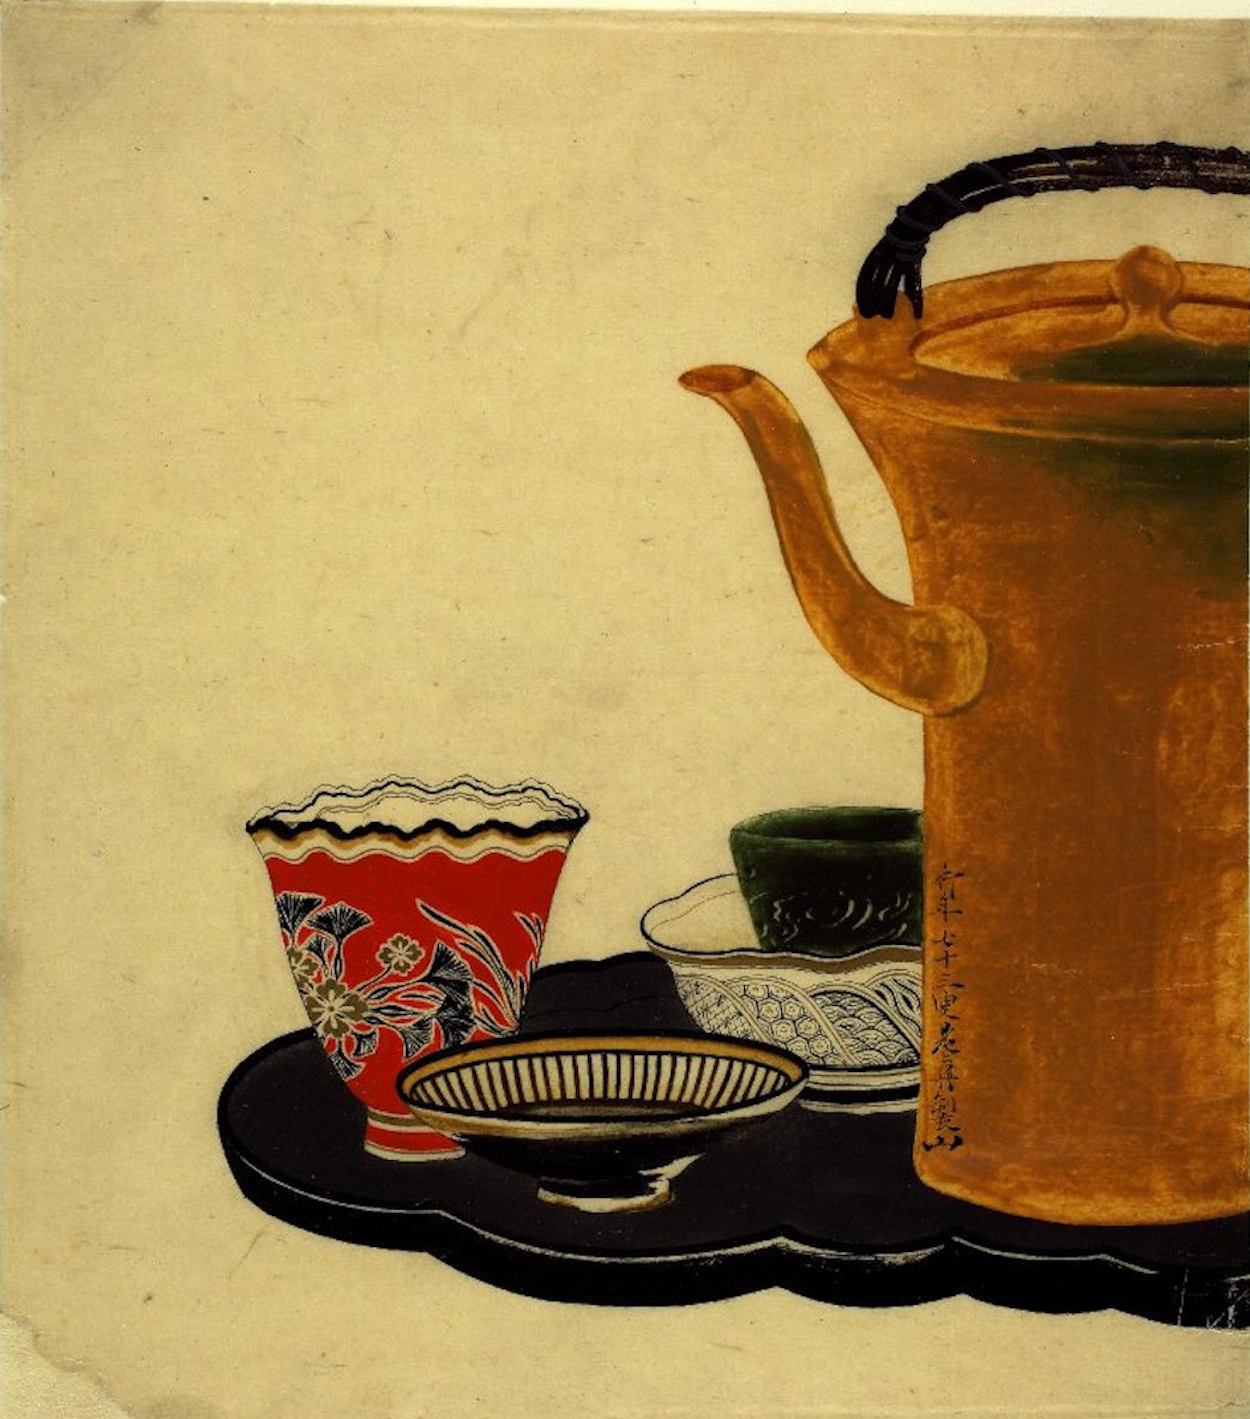 Cupe de ceai pe tavă by Shibata Zeshin - 1879 